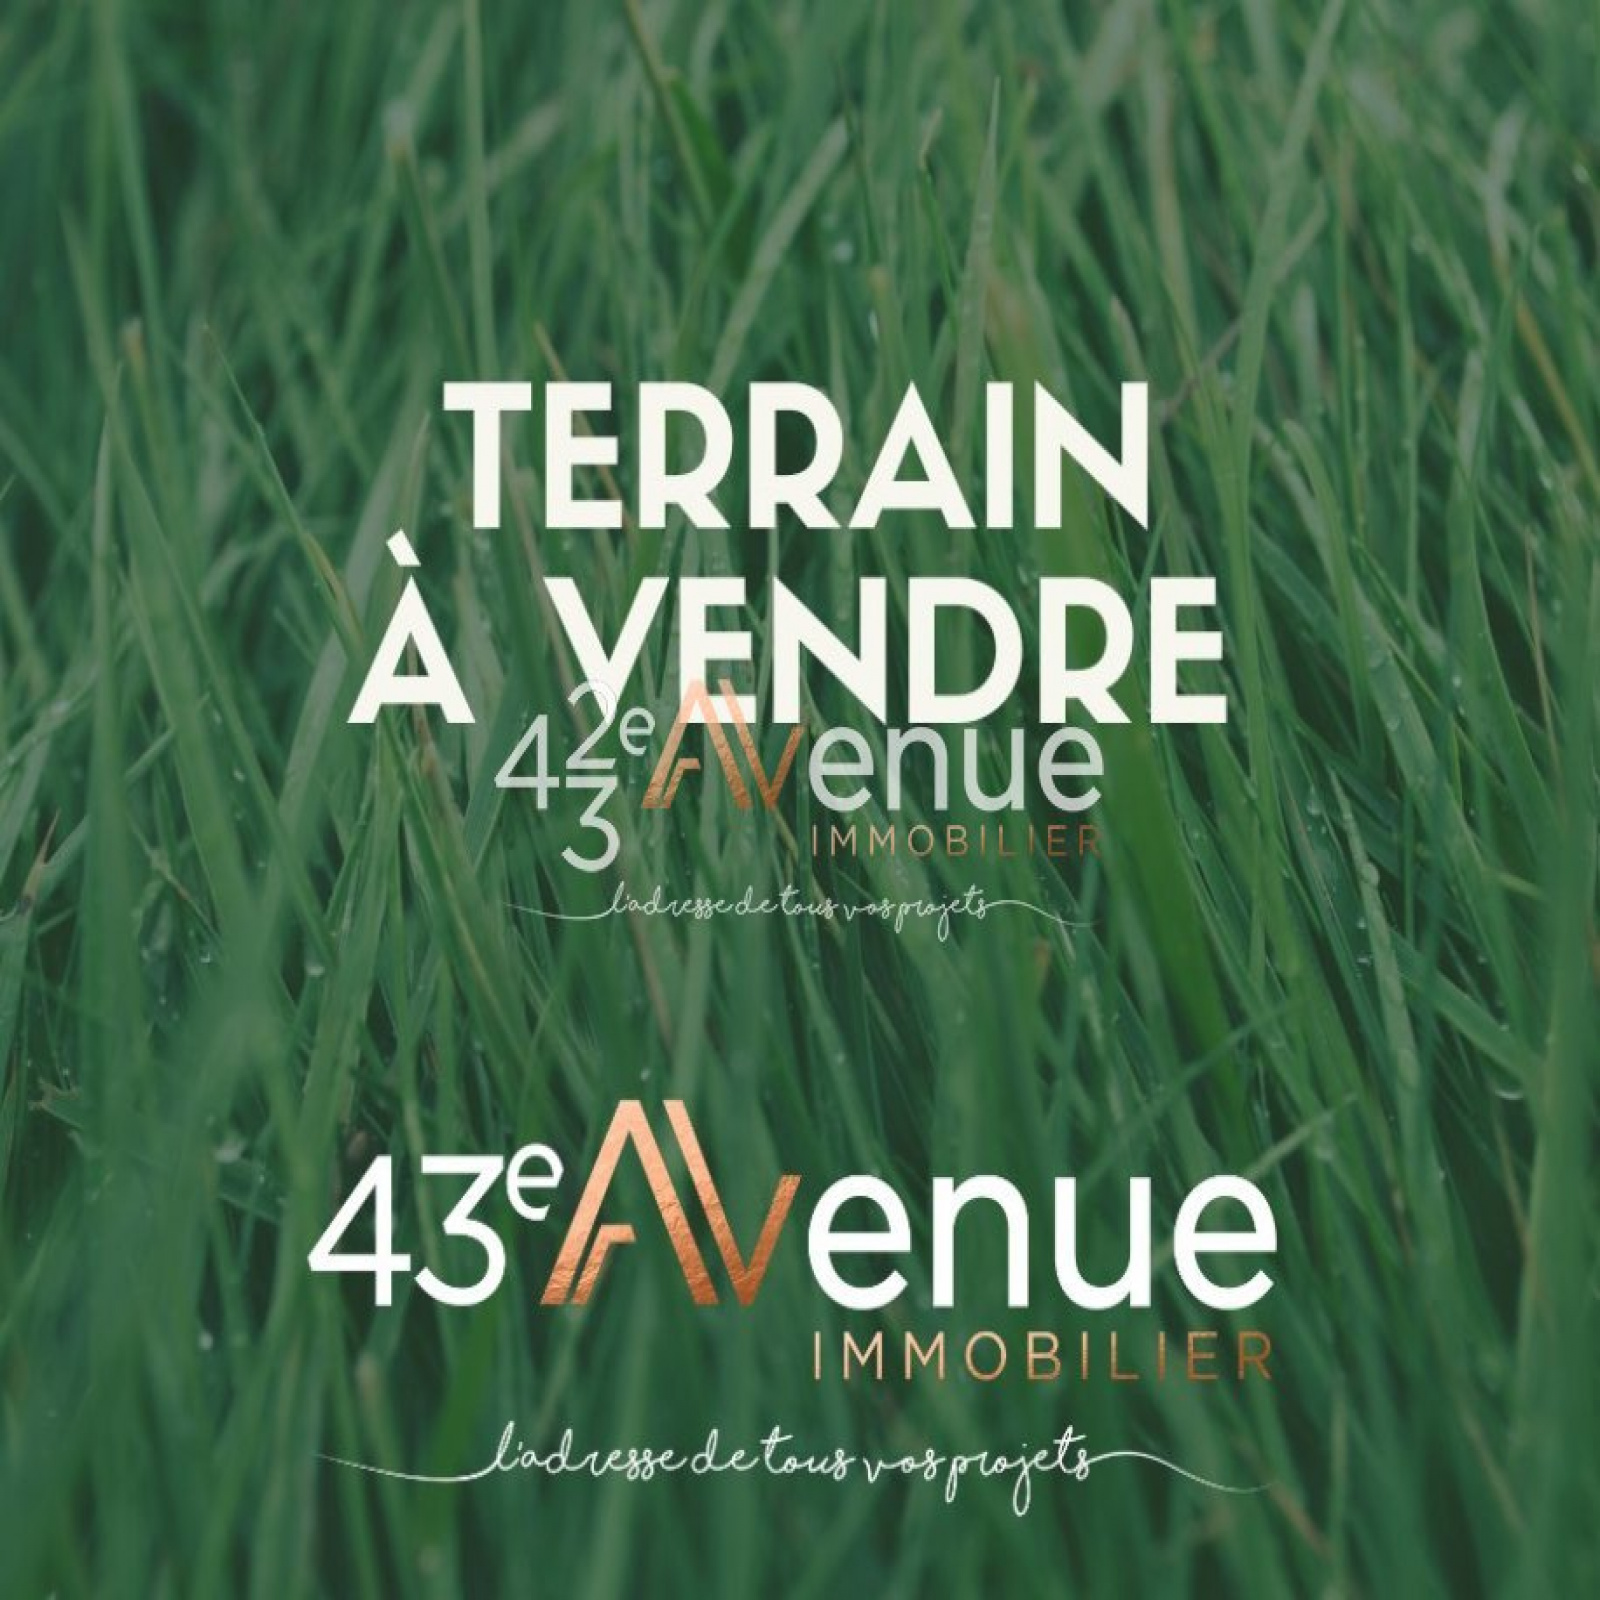 Vente Terrain à Beauzac (43590) - 43ème Avenue Immobilier